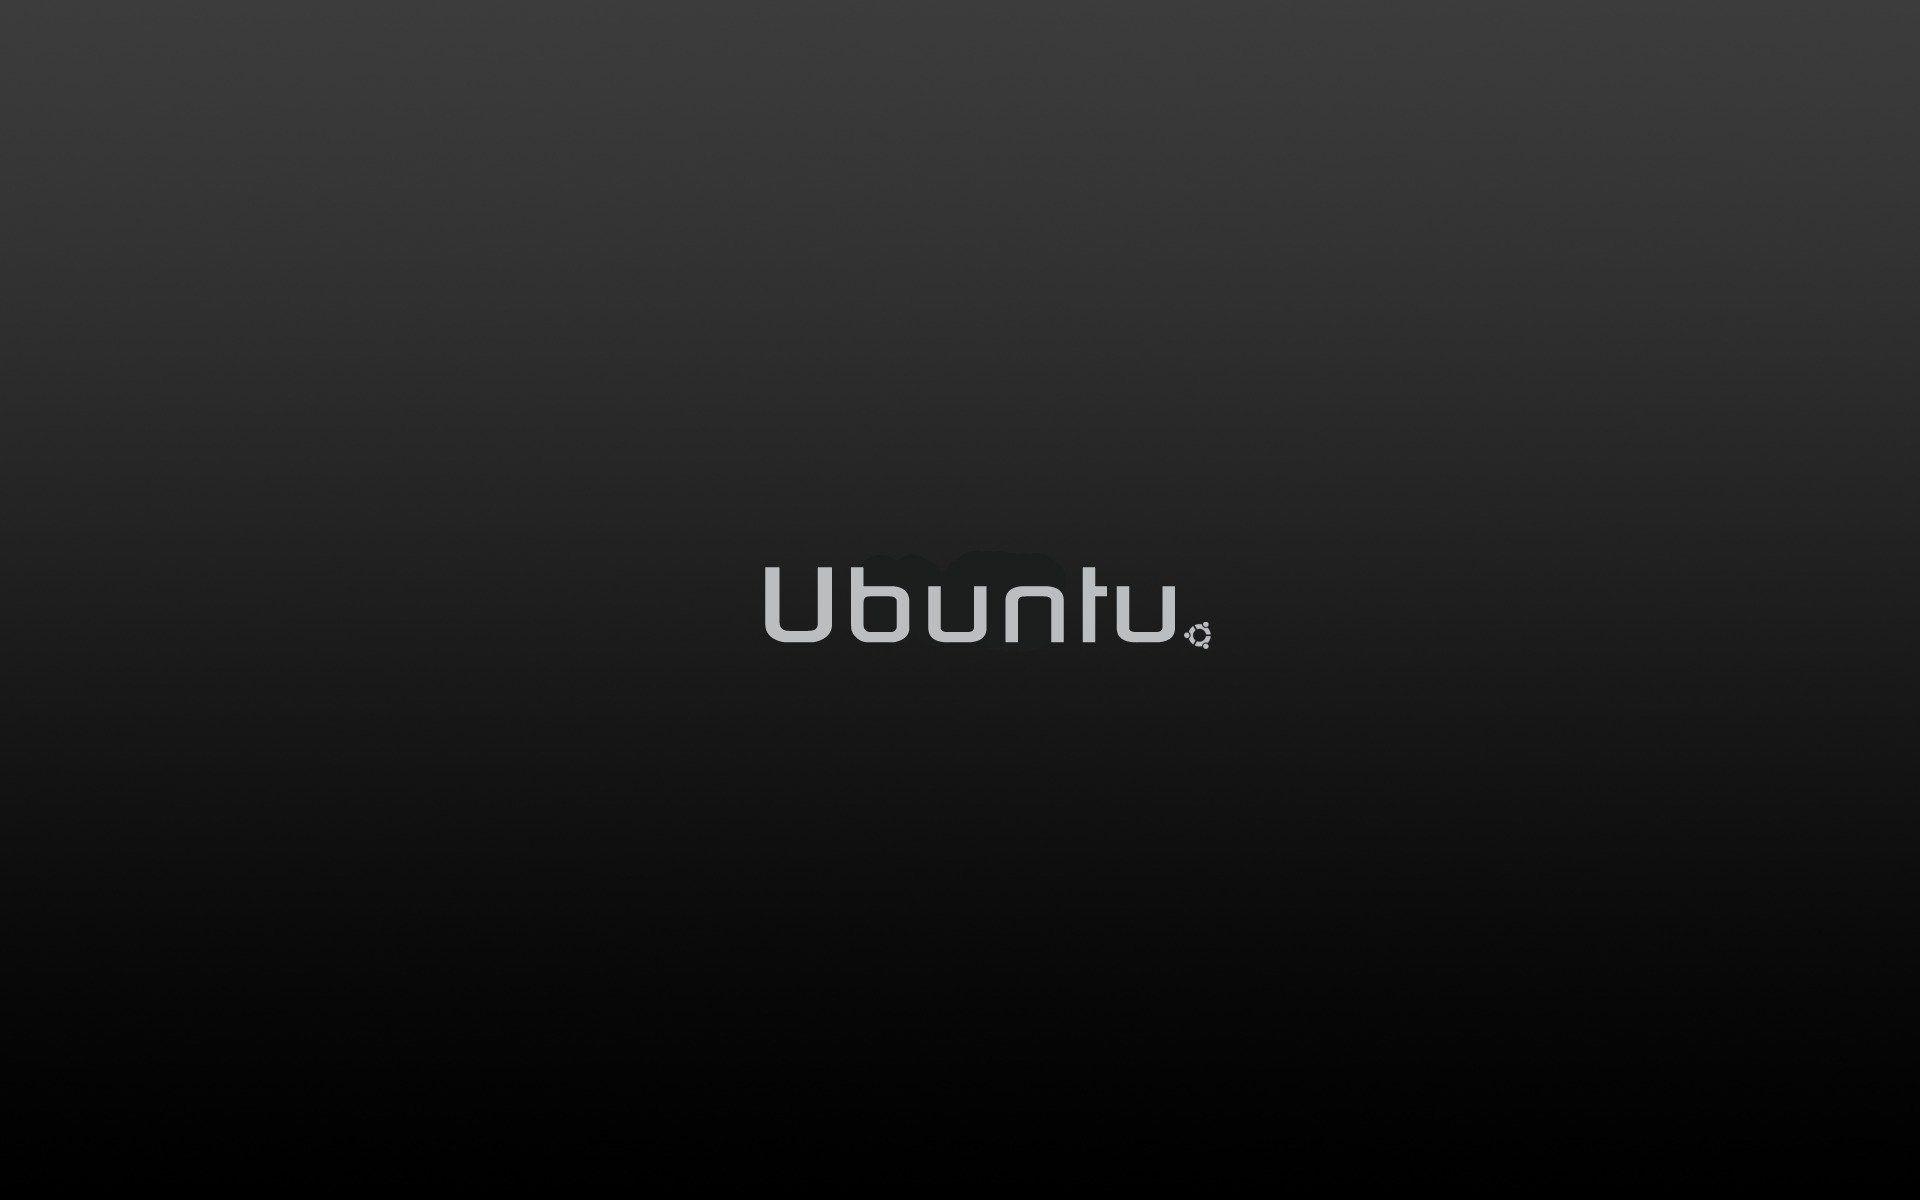 Ubuntu Dark 334755